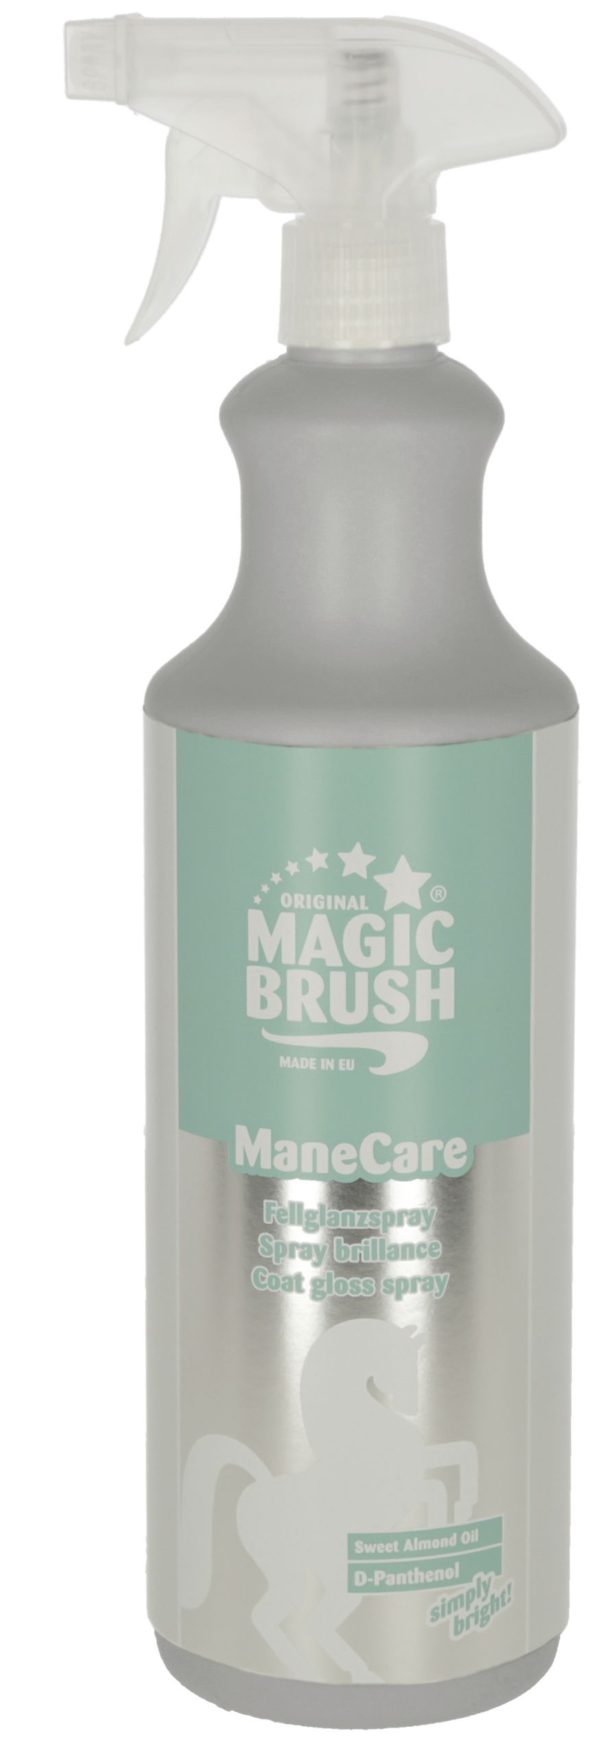 Spray do pielęgnacji sierści, grzywy i ogona dla konia ManeCare - 1000ml - MagicBrush 1